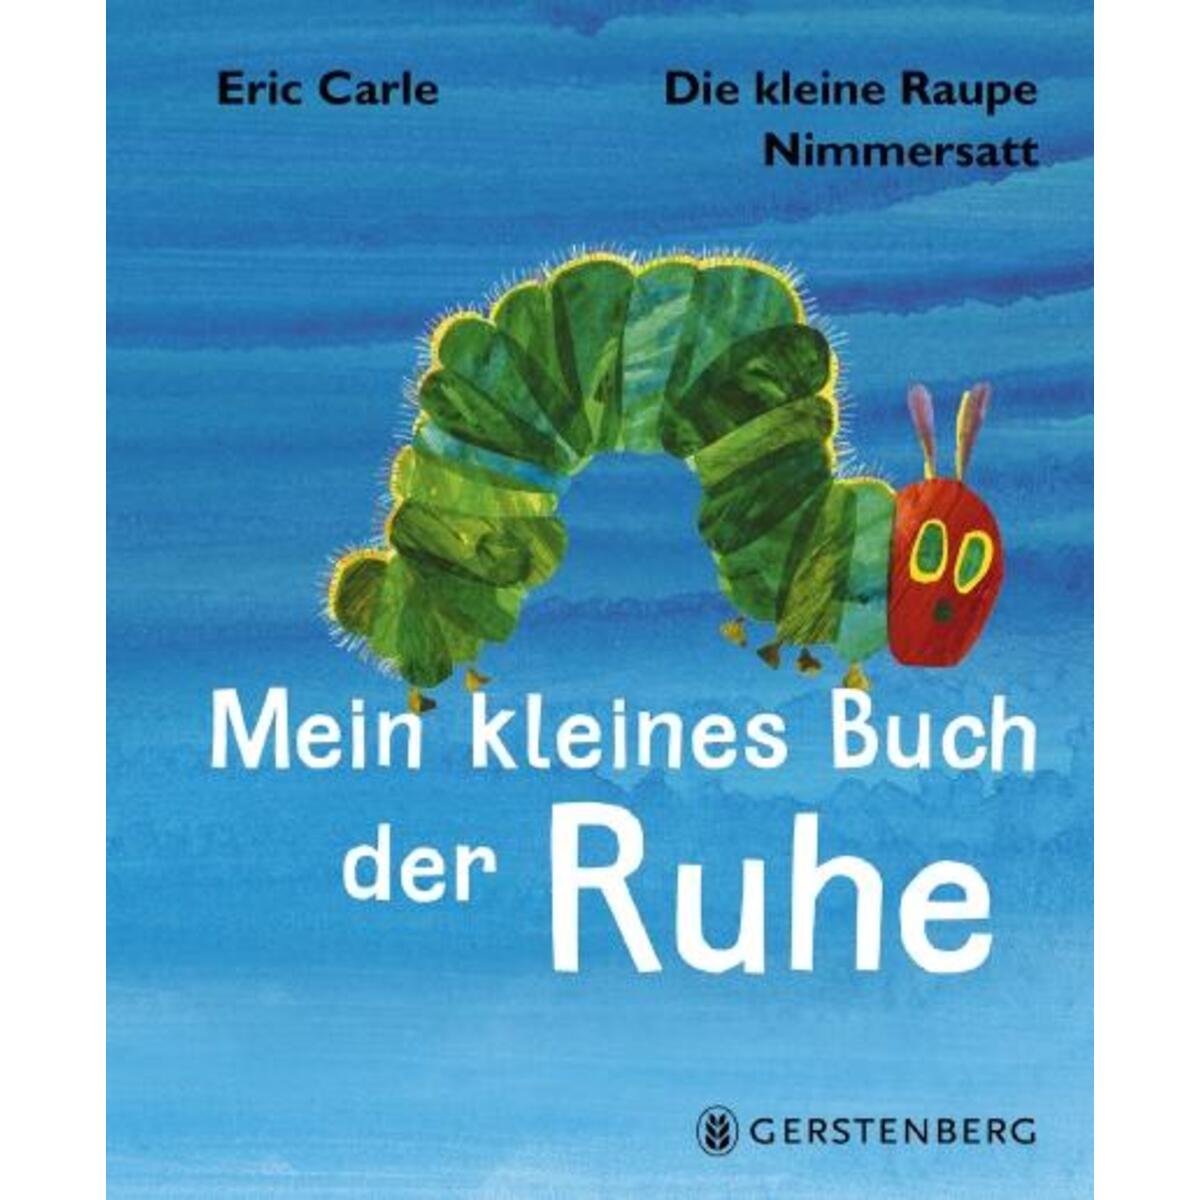 Die kleine Raupe Nimmersatt - Kleines Buch der Ruhe von Gerstenberg Verlag